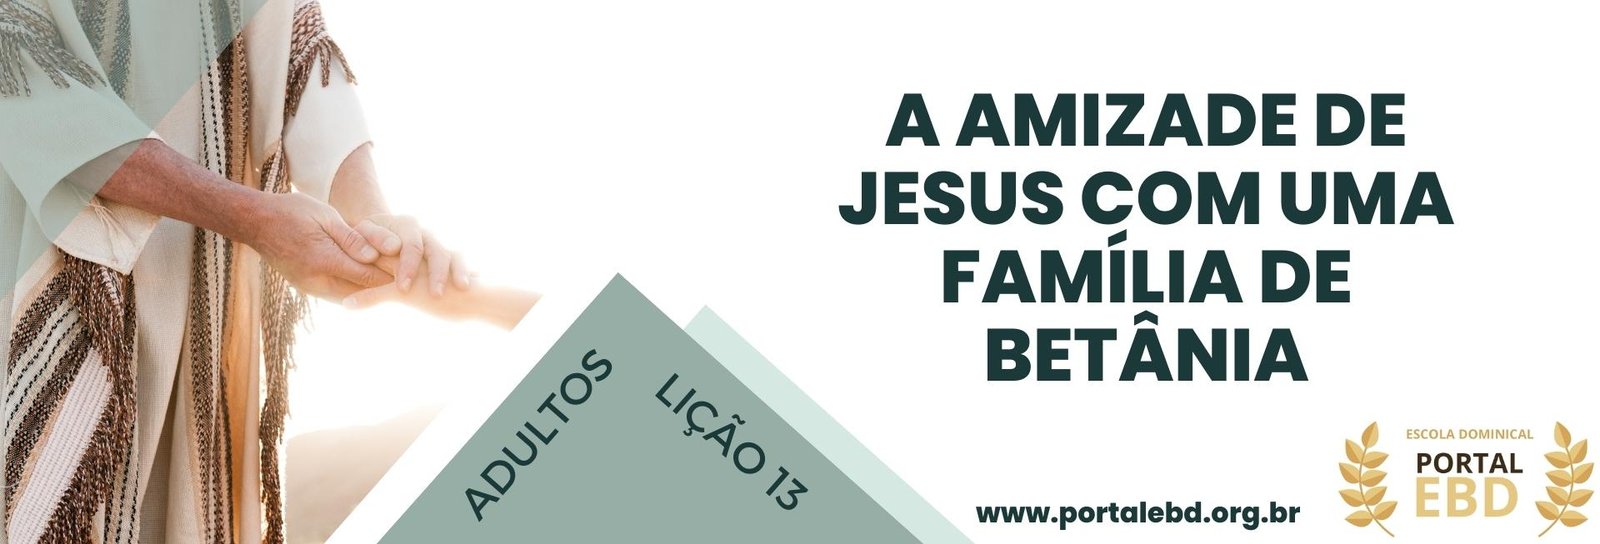 Lição 13 - A amizade de Jesus com uma família em Betânia III